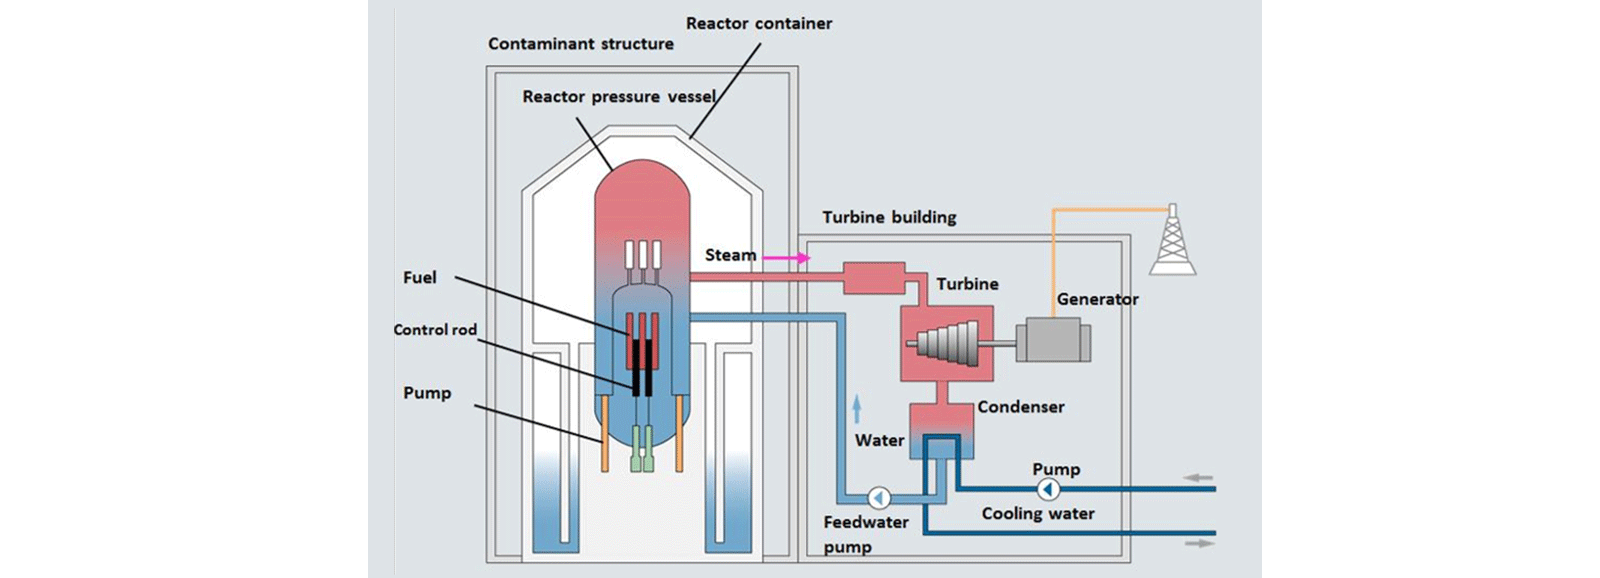 Centrales nucleares: reactor de agua en ebullición (BWR)